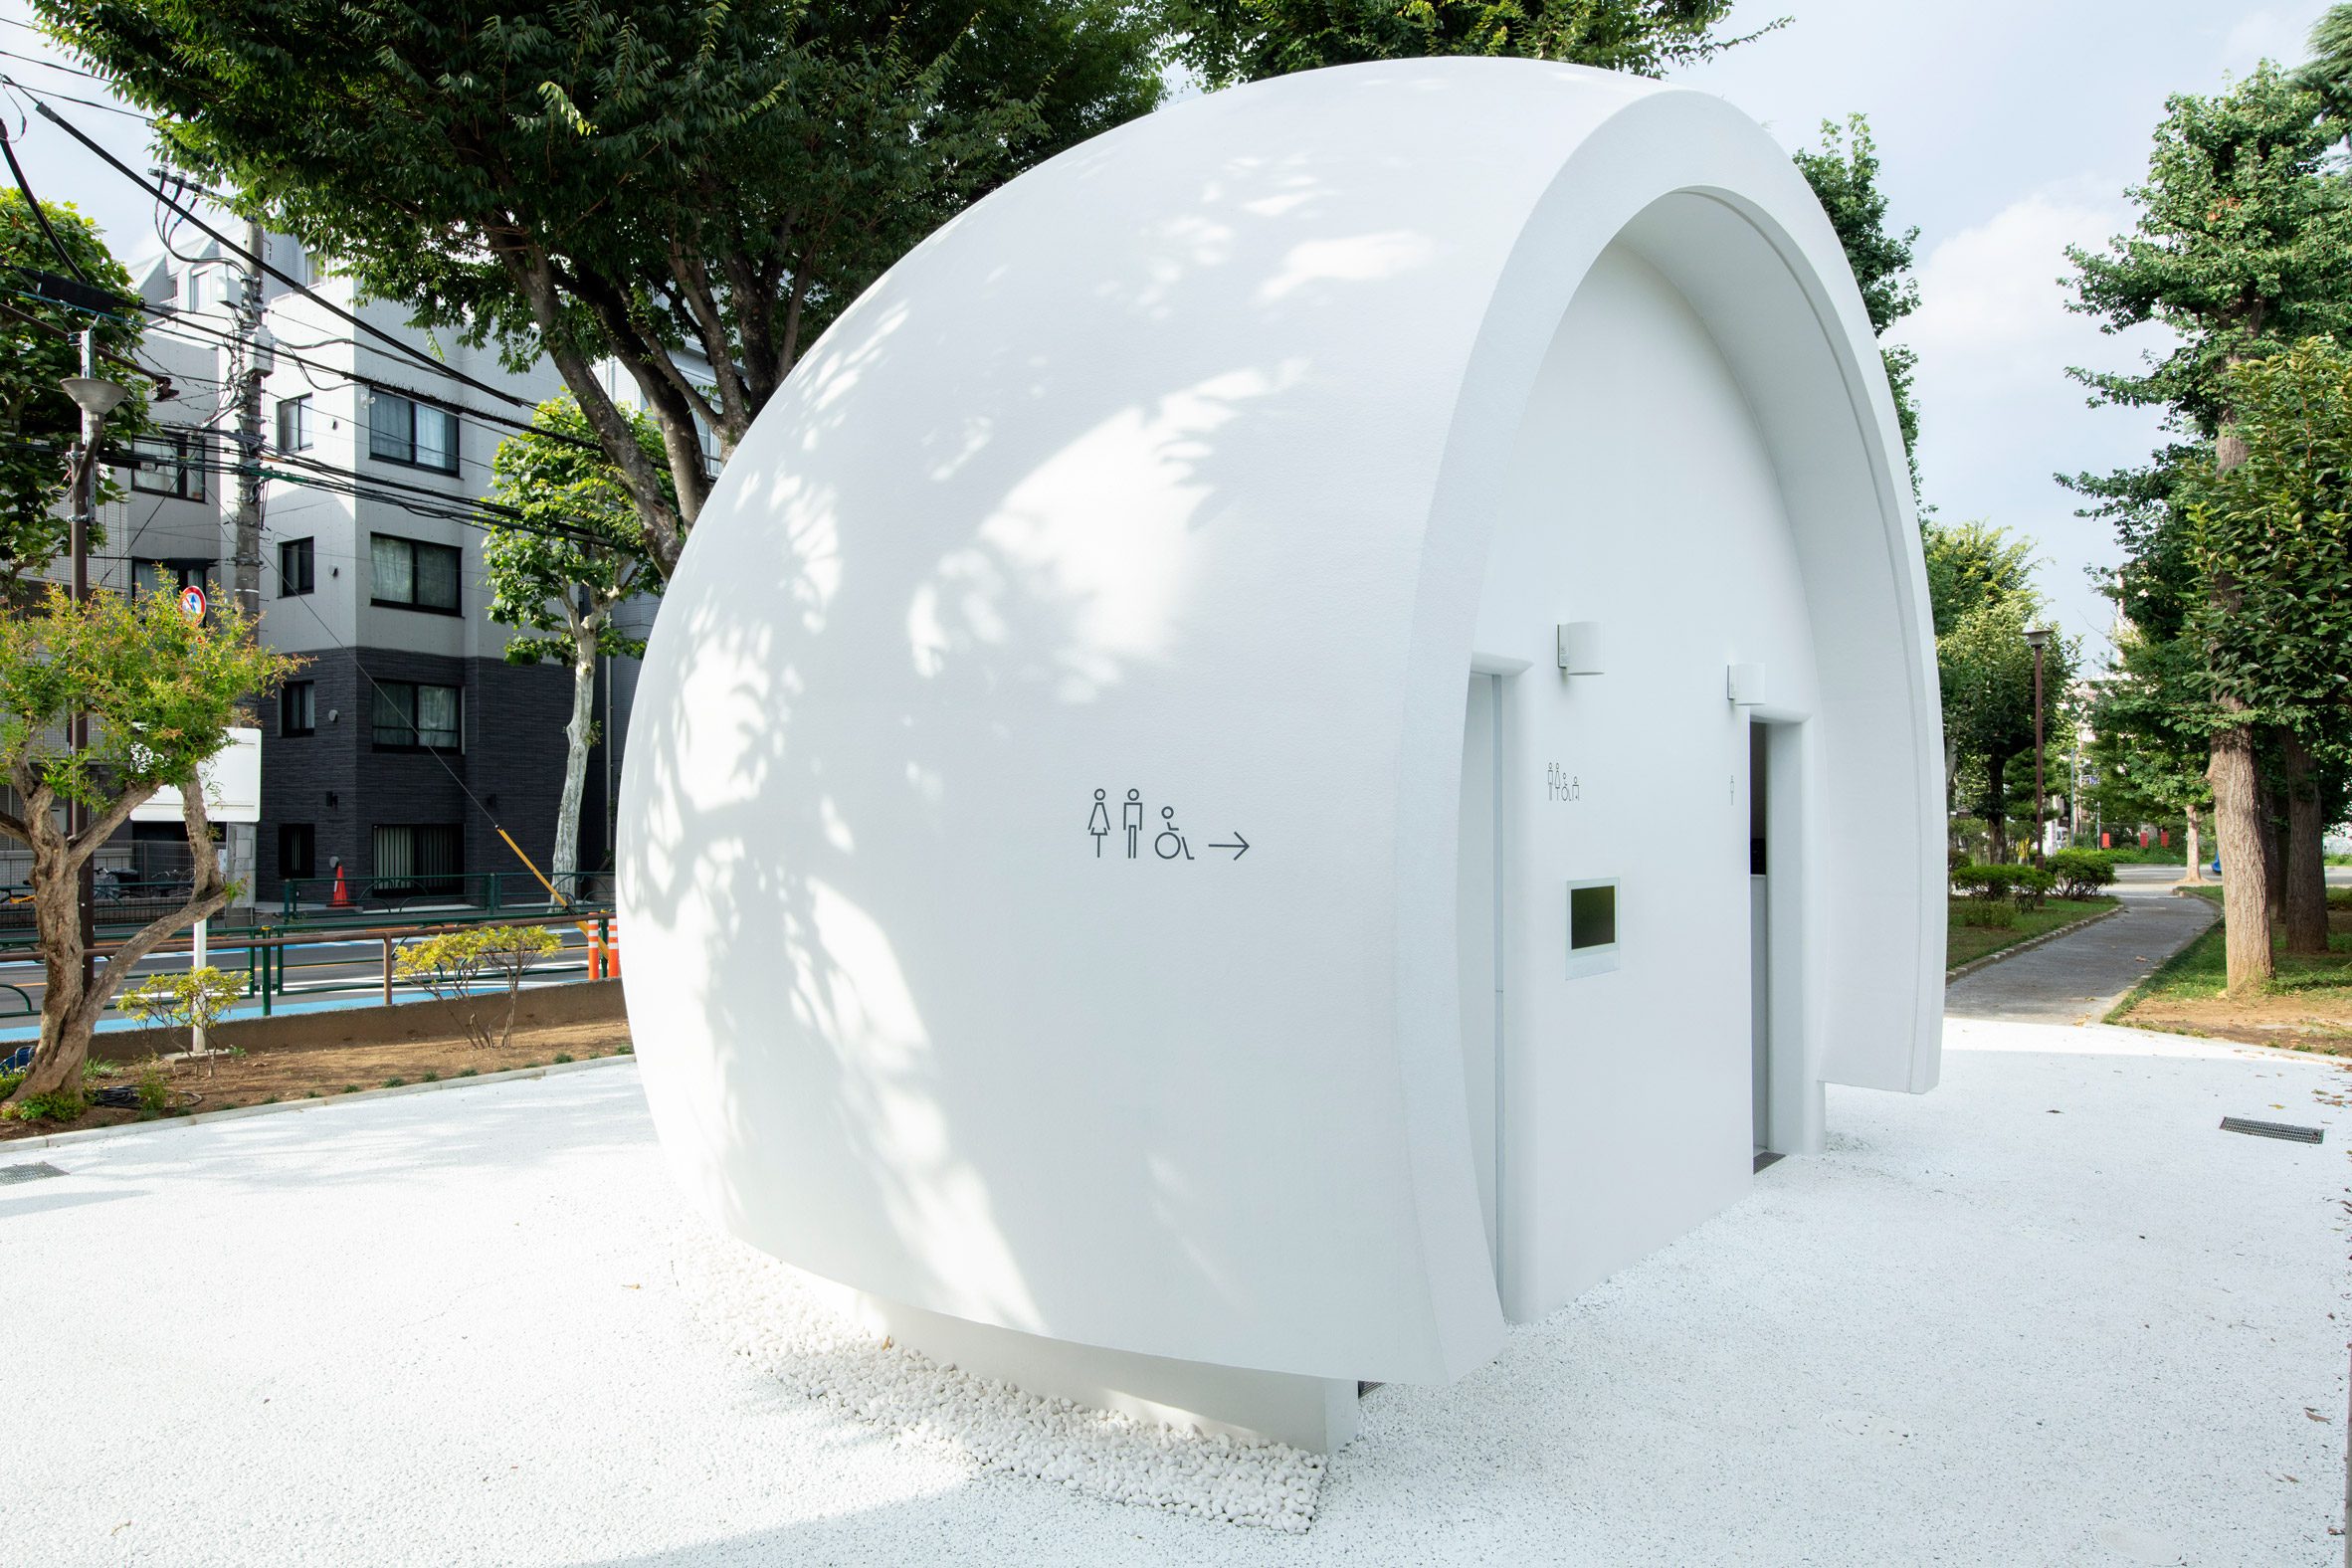 Hemispherical toilet in Tokyo